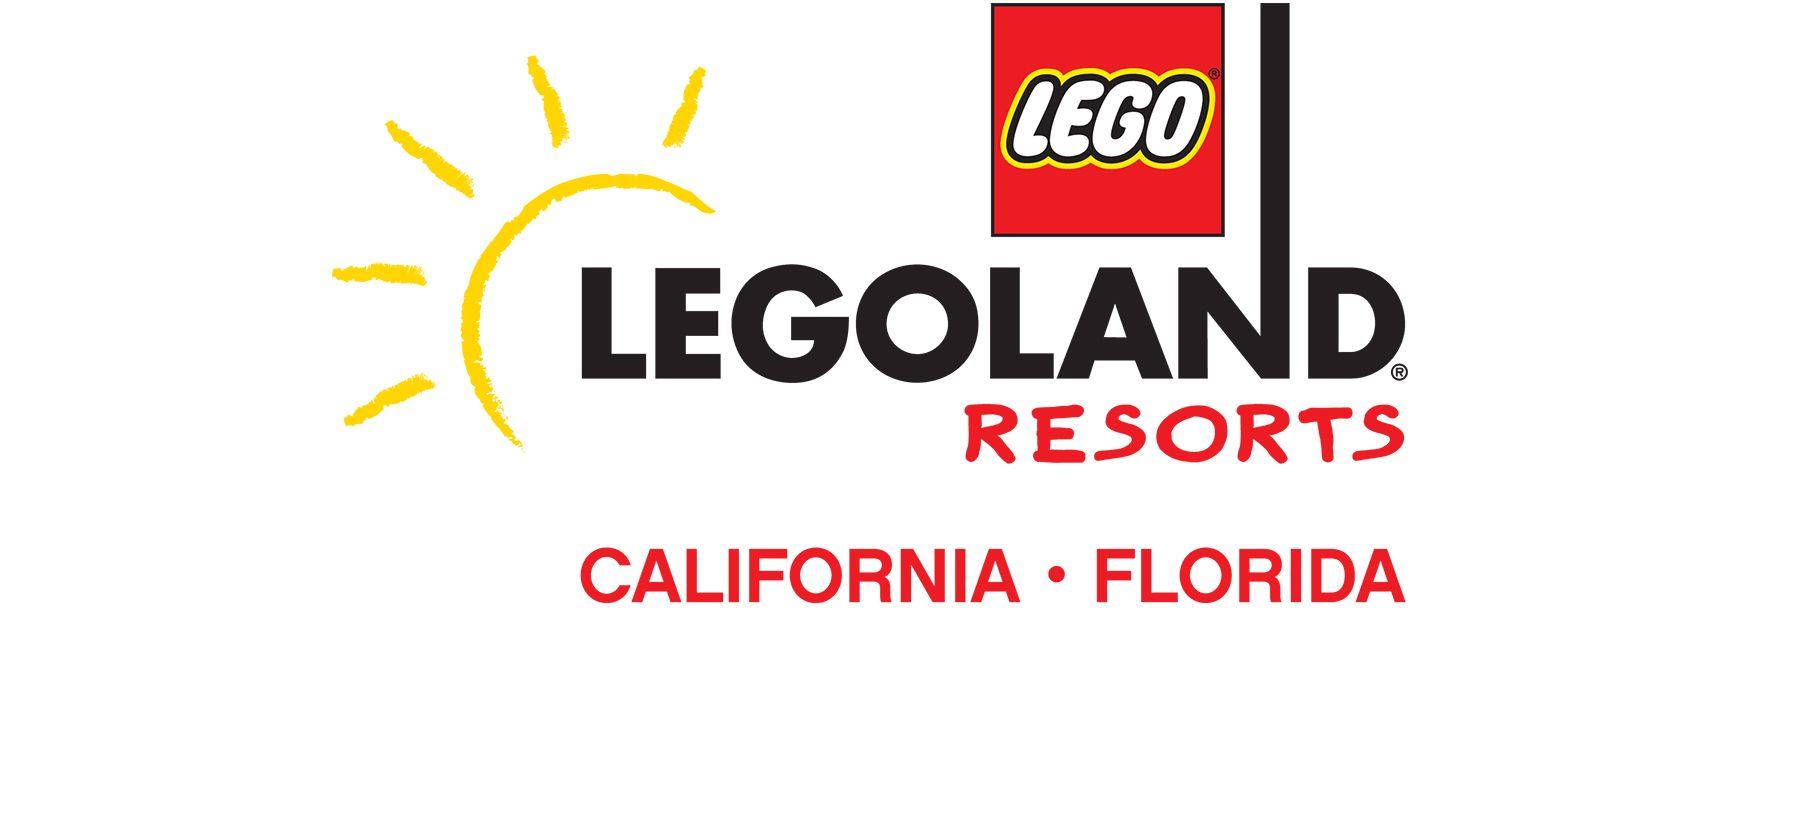 Logoland Logo - LEGOLAND Image Gallery | LEGOLAND California Resort